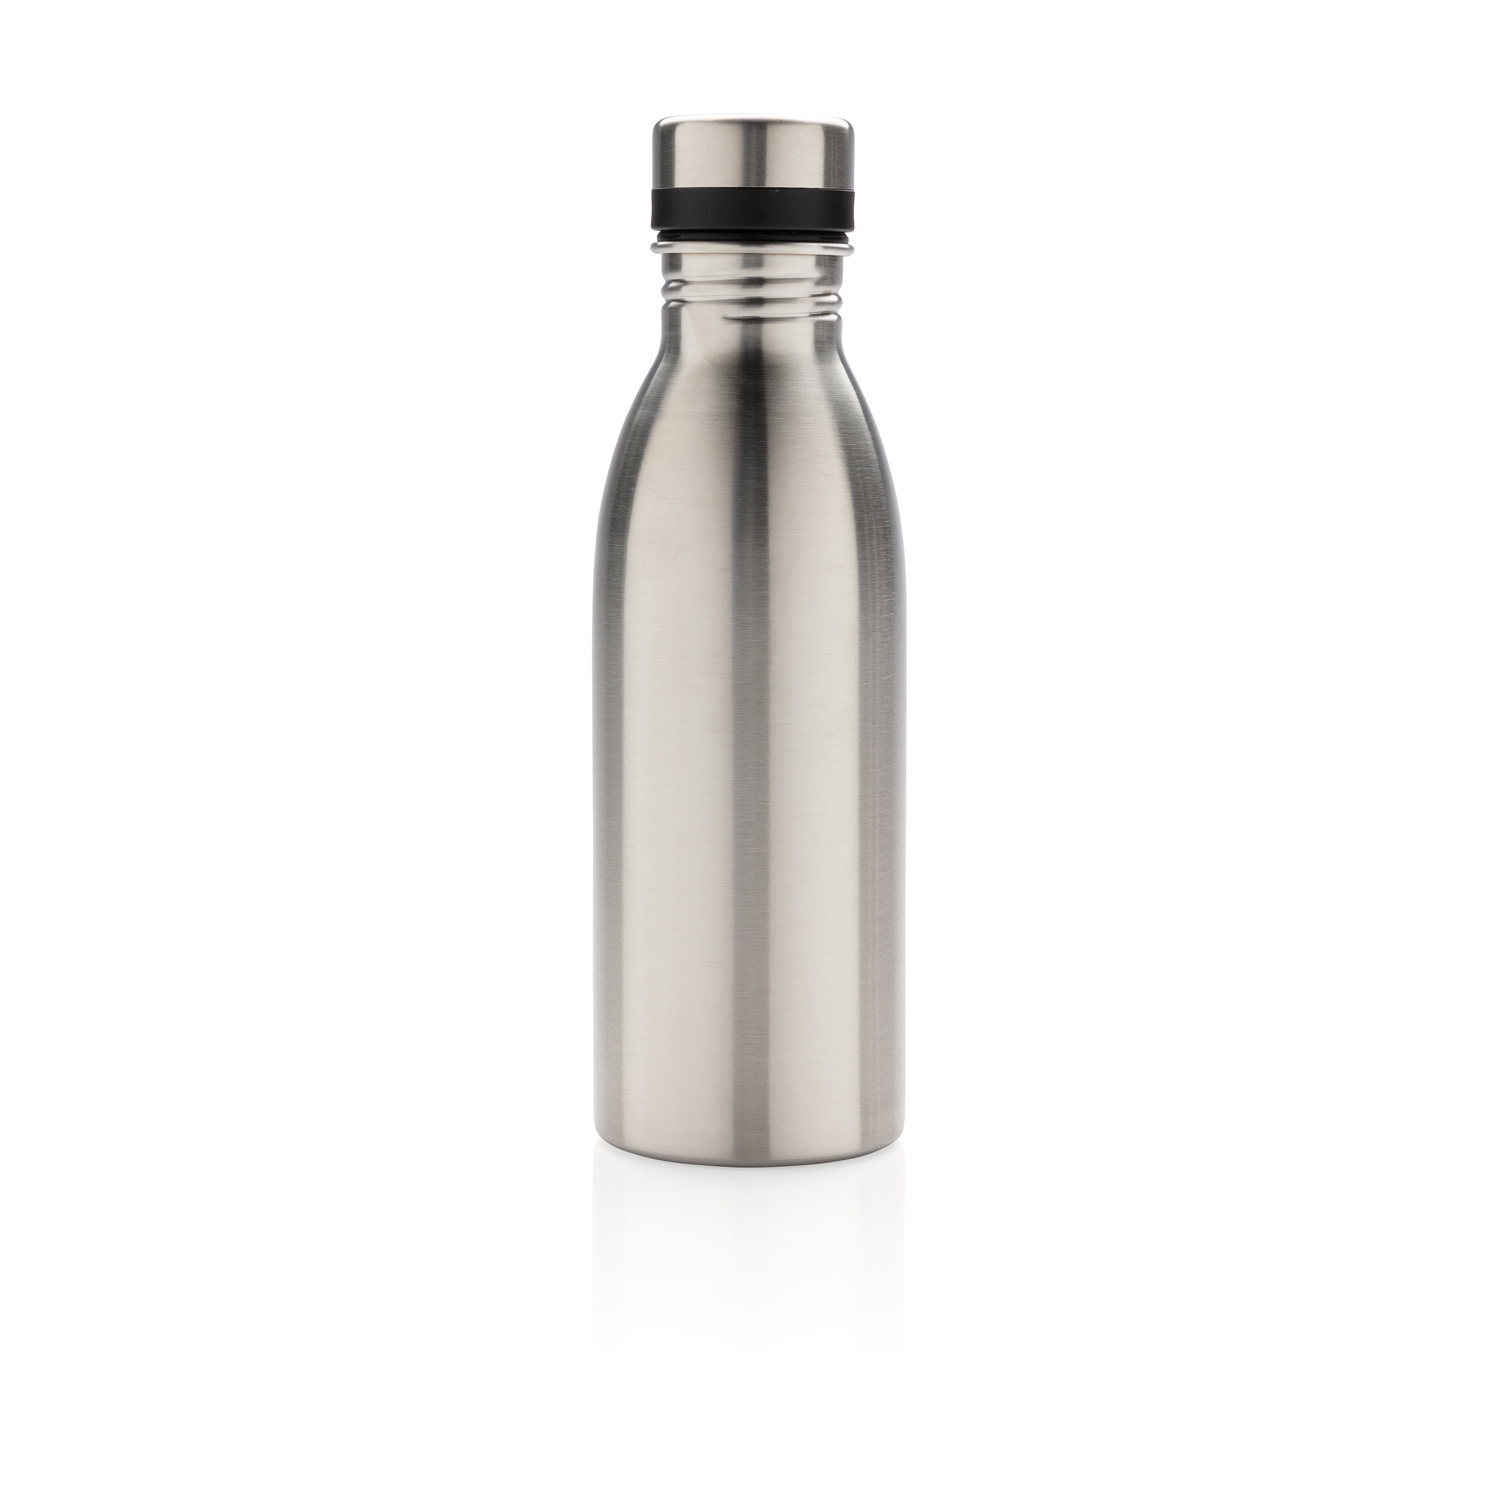 Бутылка для воды Deluxe из нержавеющей стали, 500 мл, серебристый, нержавеющая сталь